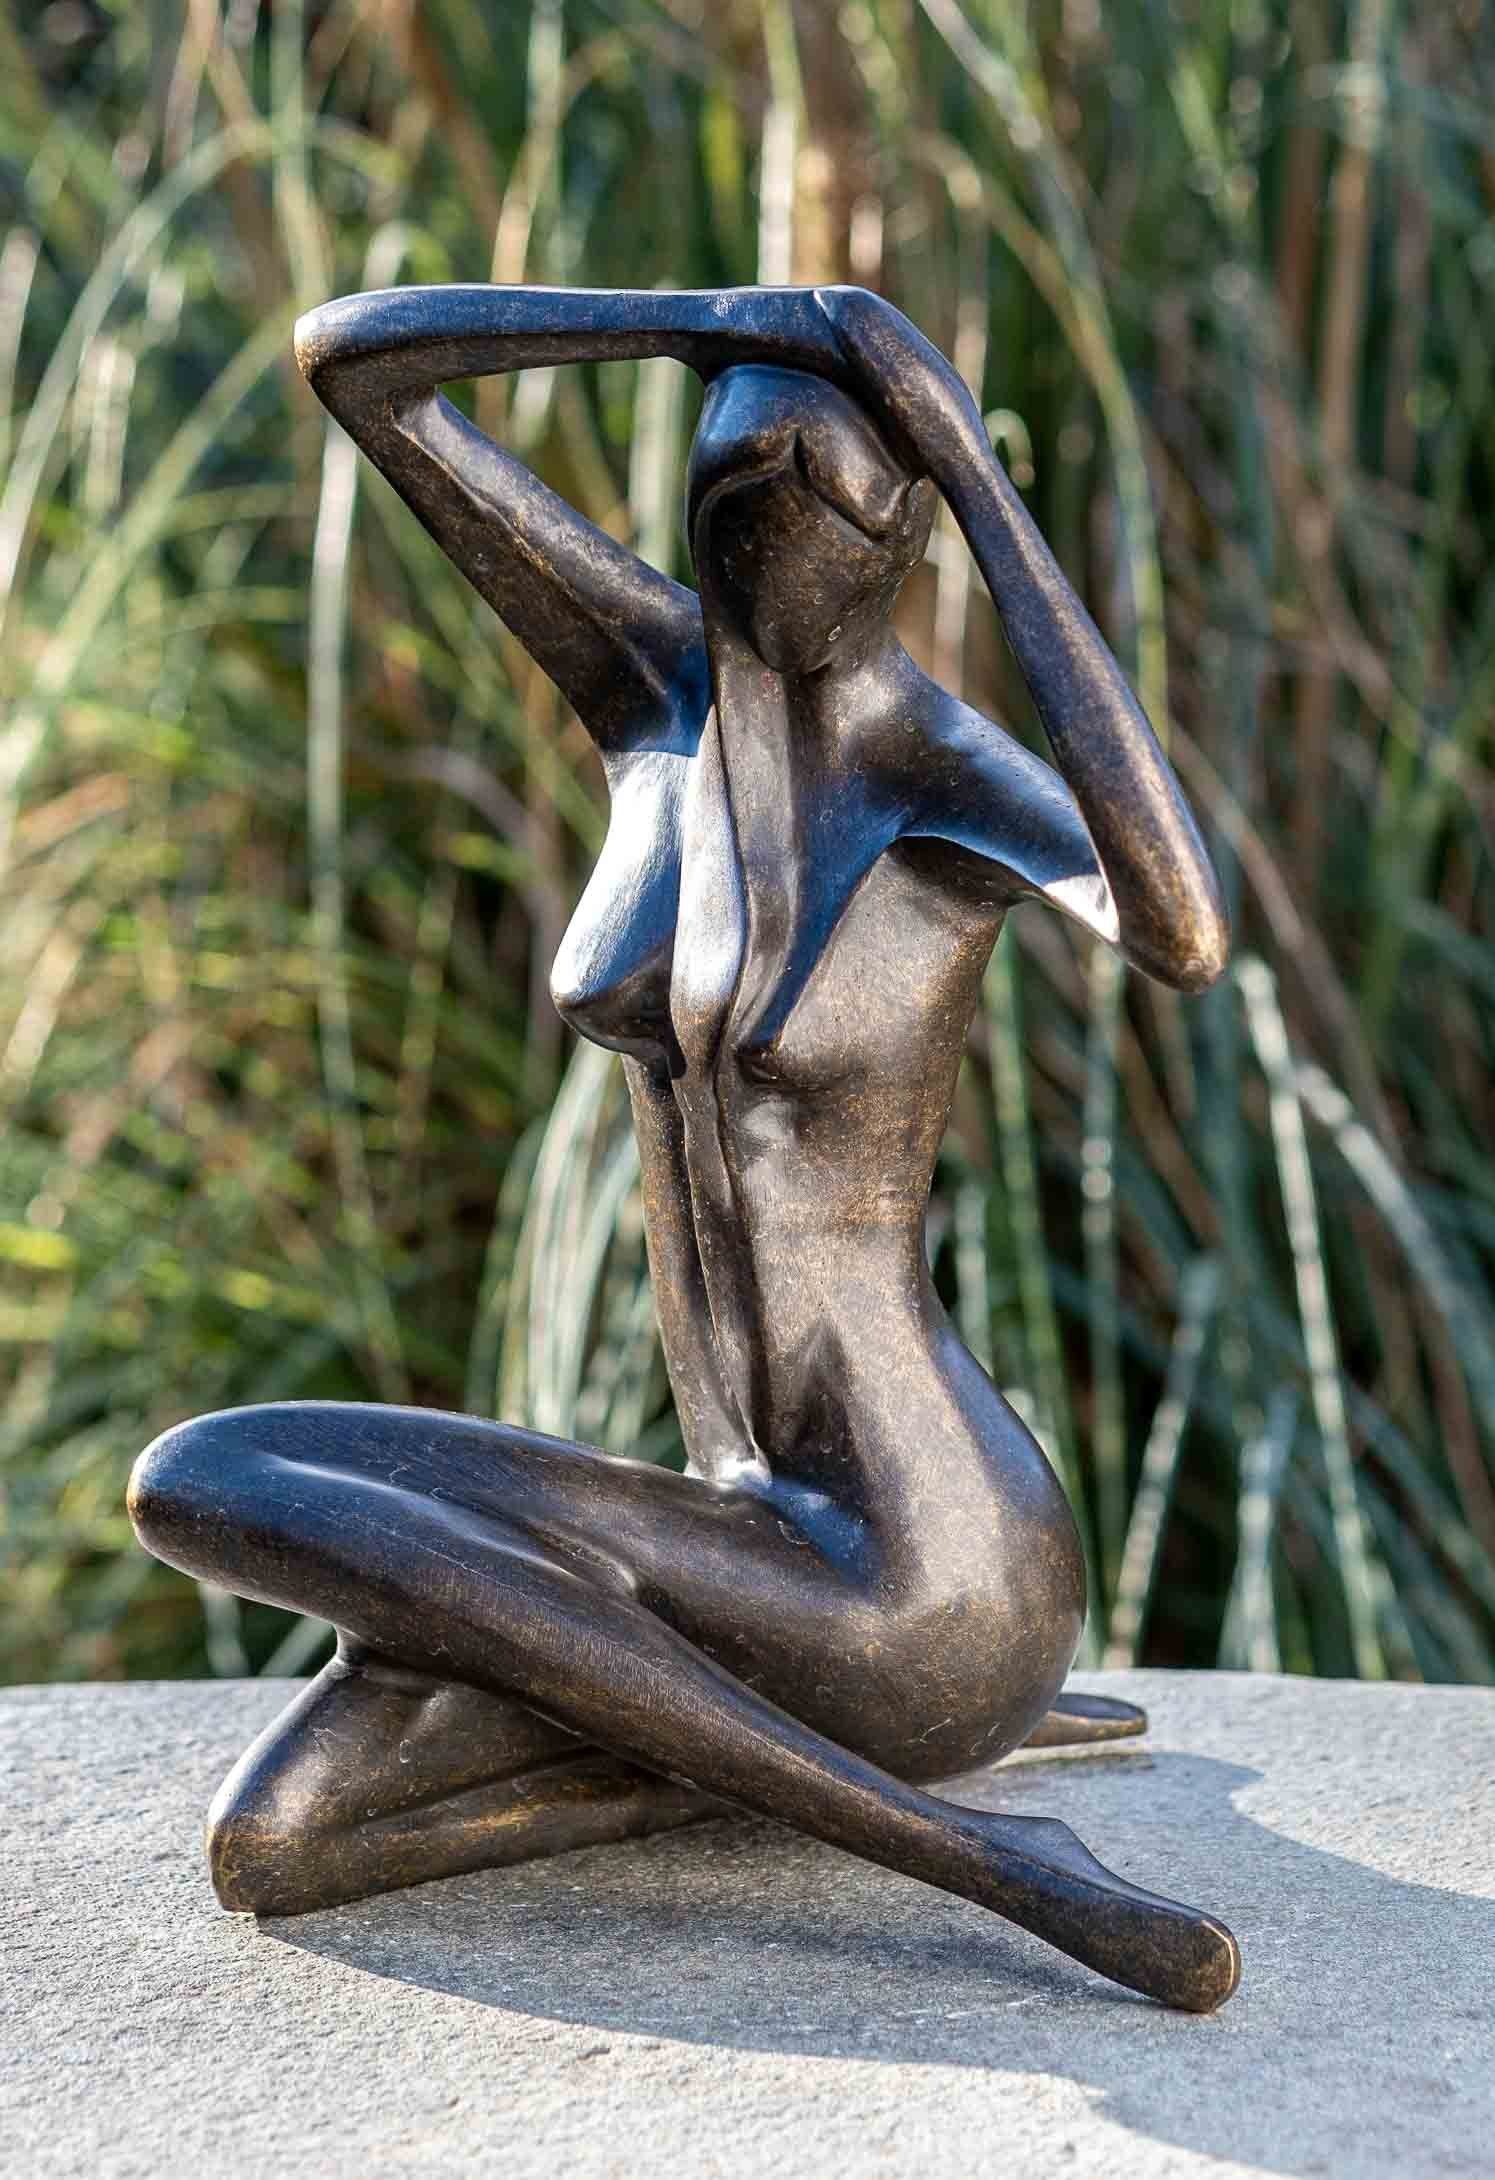 – Gartenfigur Sitzende Langlebig gegen IDYL Hand gegossen IDYL sehr witterungsbeständig Frost, Bronze-Skulptur und – und robust Bronze UV-Strahlung. Modelle von in in werden Bronze Frau, Wachsausschmelzverfahren patiniert. Die Regen –